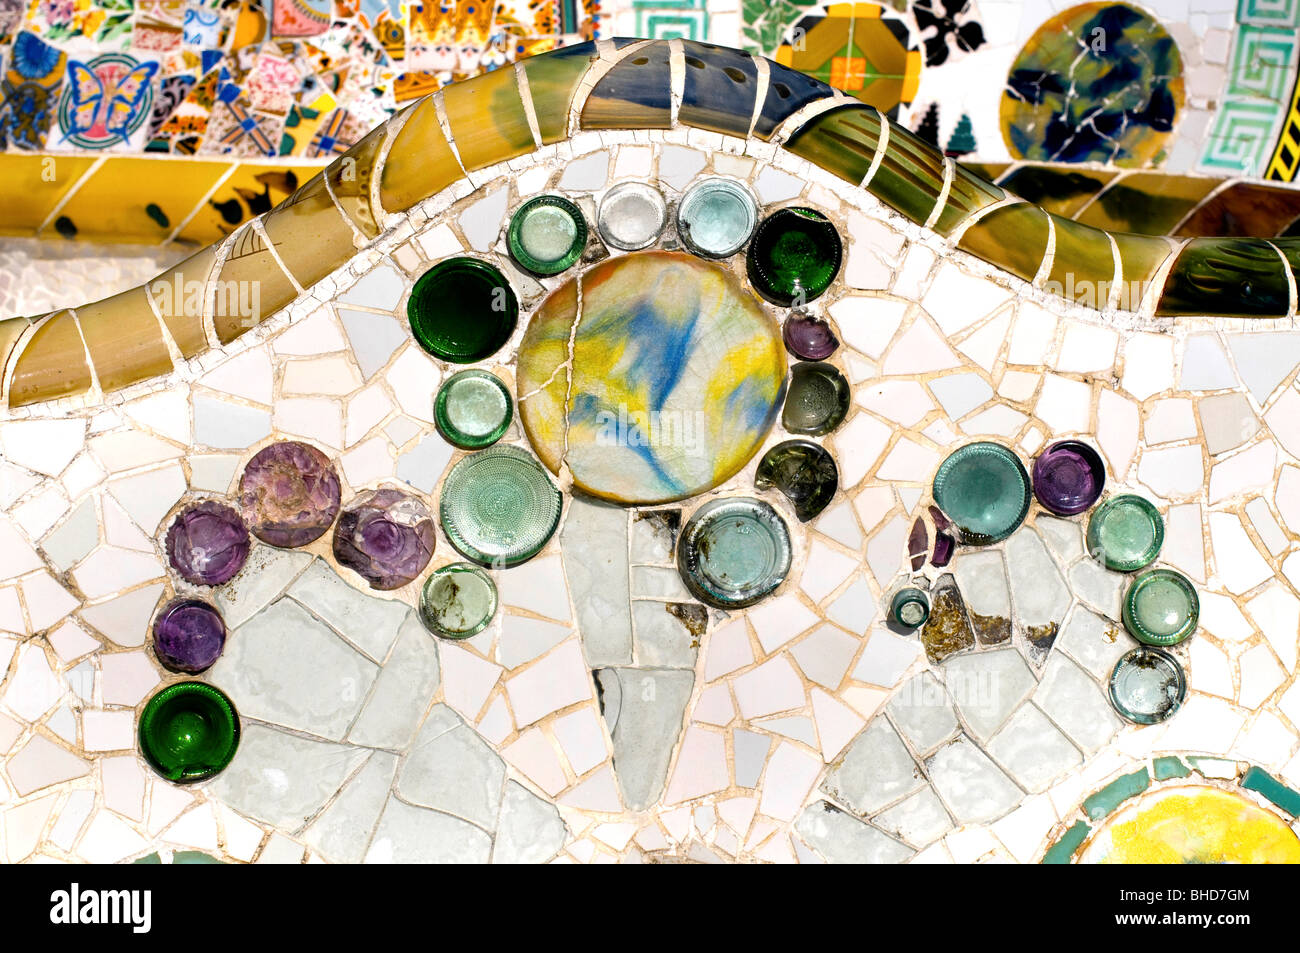 Antoni Gaudi lavoro di mosaico sulla terrazza principale al Parco Guell, Barcellona, Spagna Foto Stock